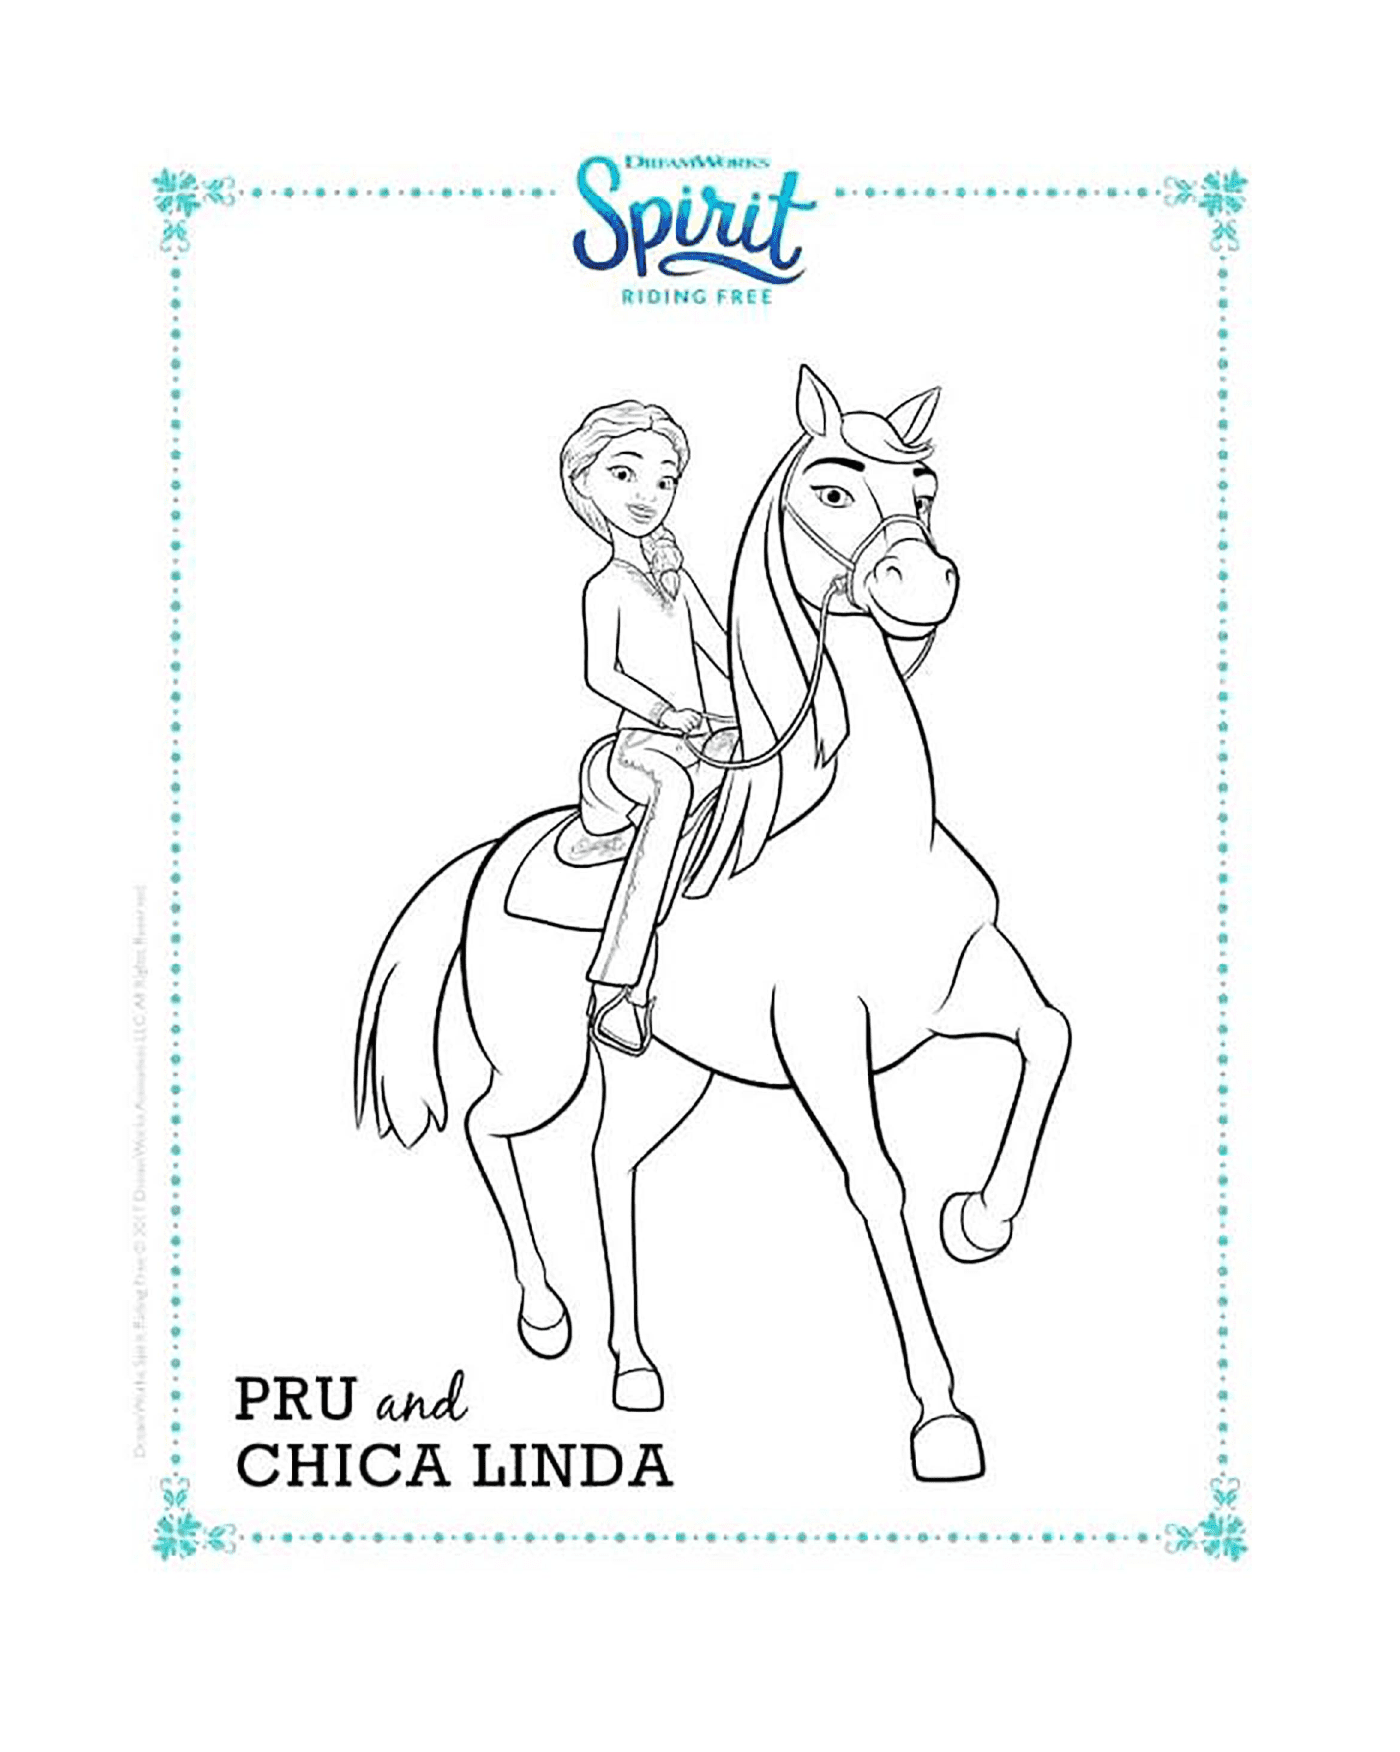  Pru und Chica Linda, reiten Spirit 